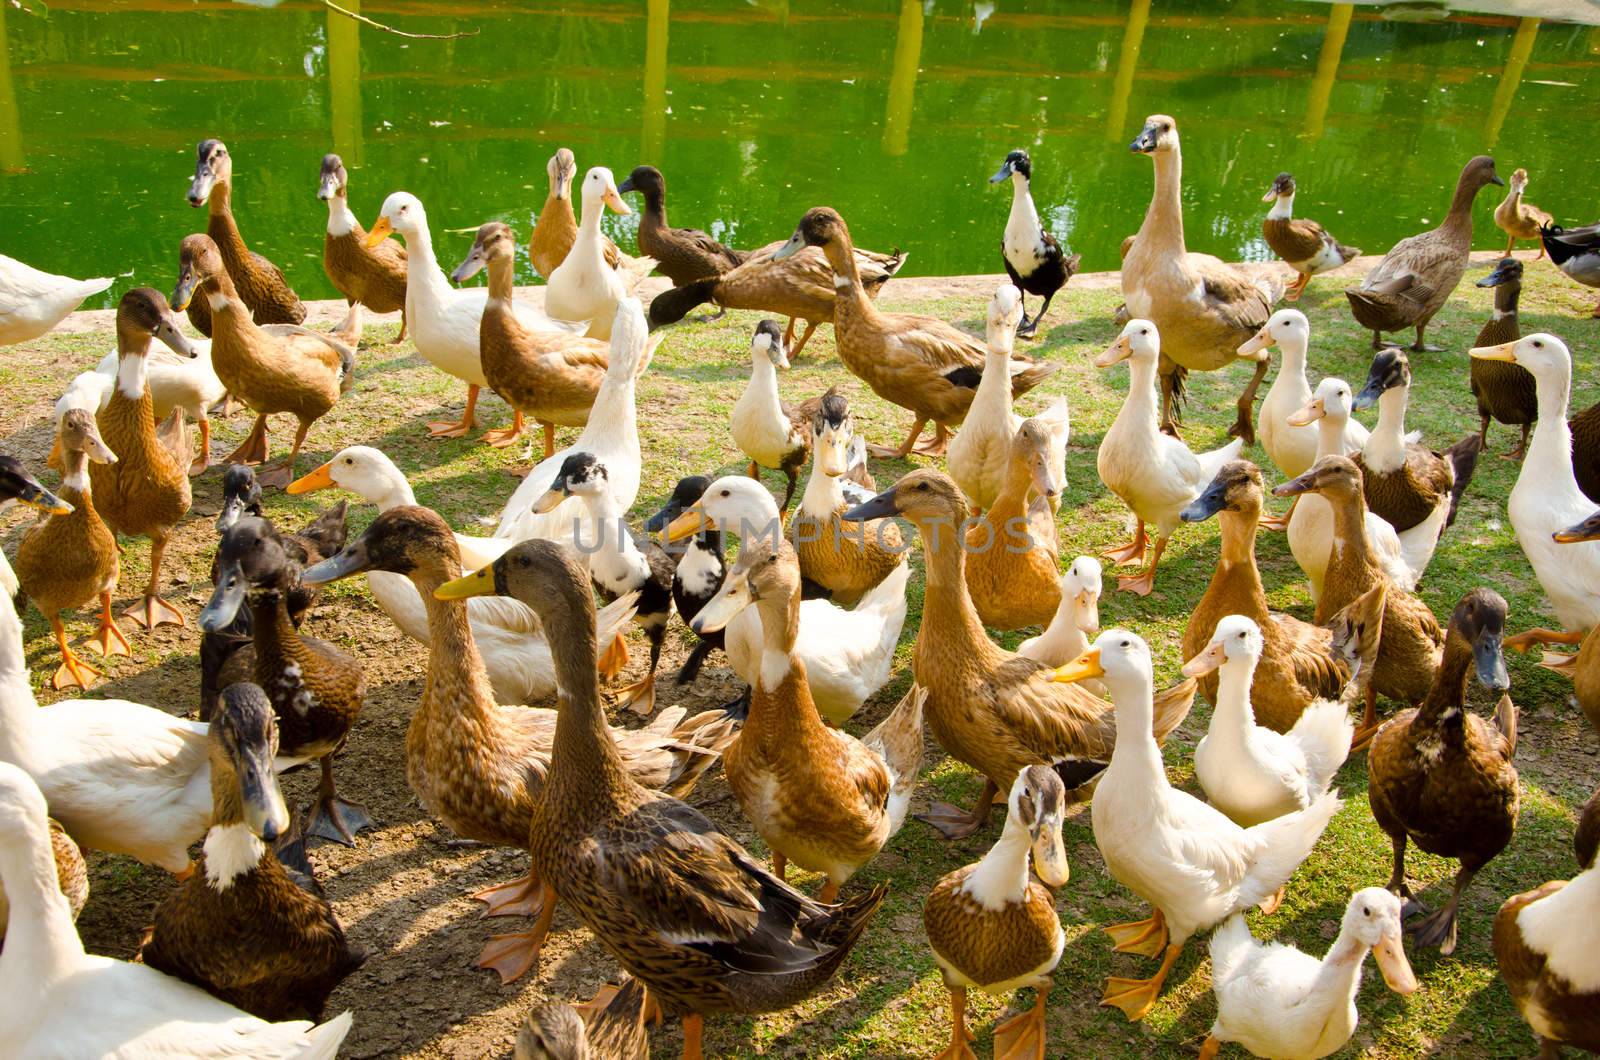 Many ducks near streams